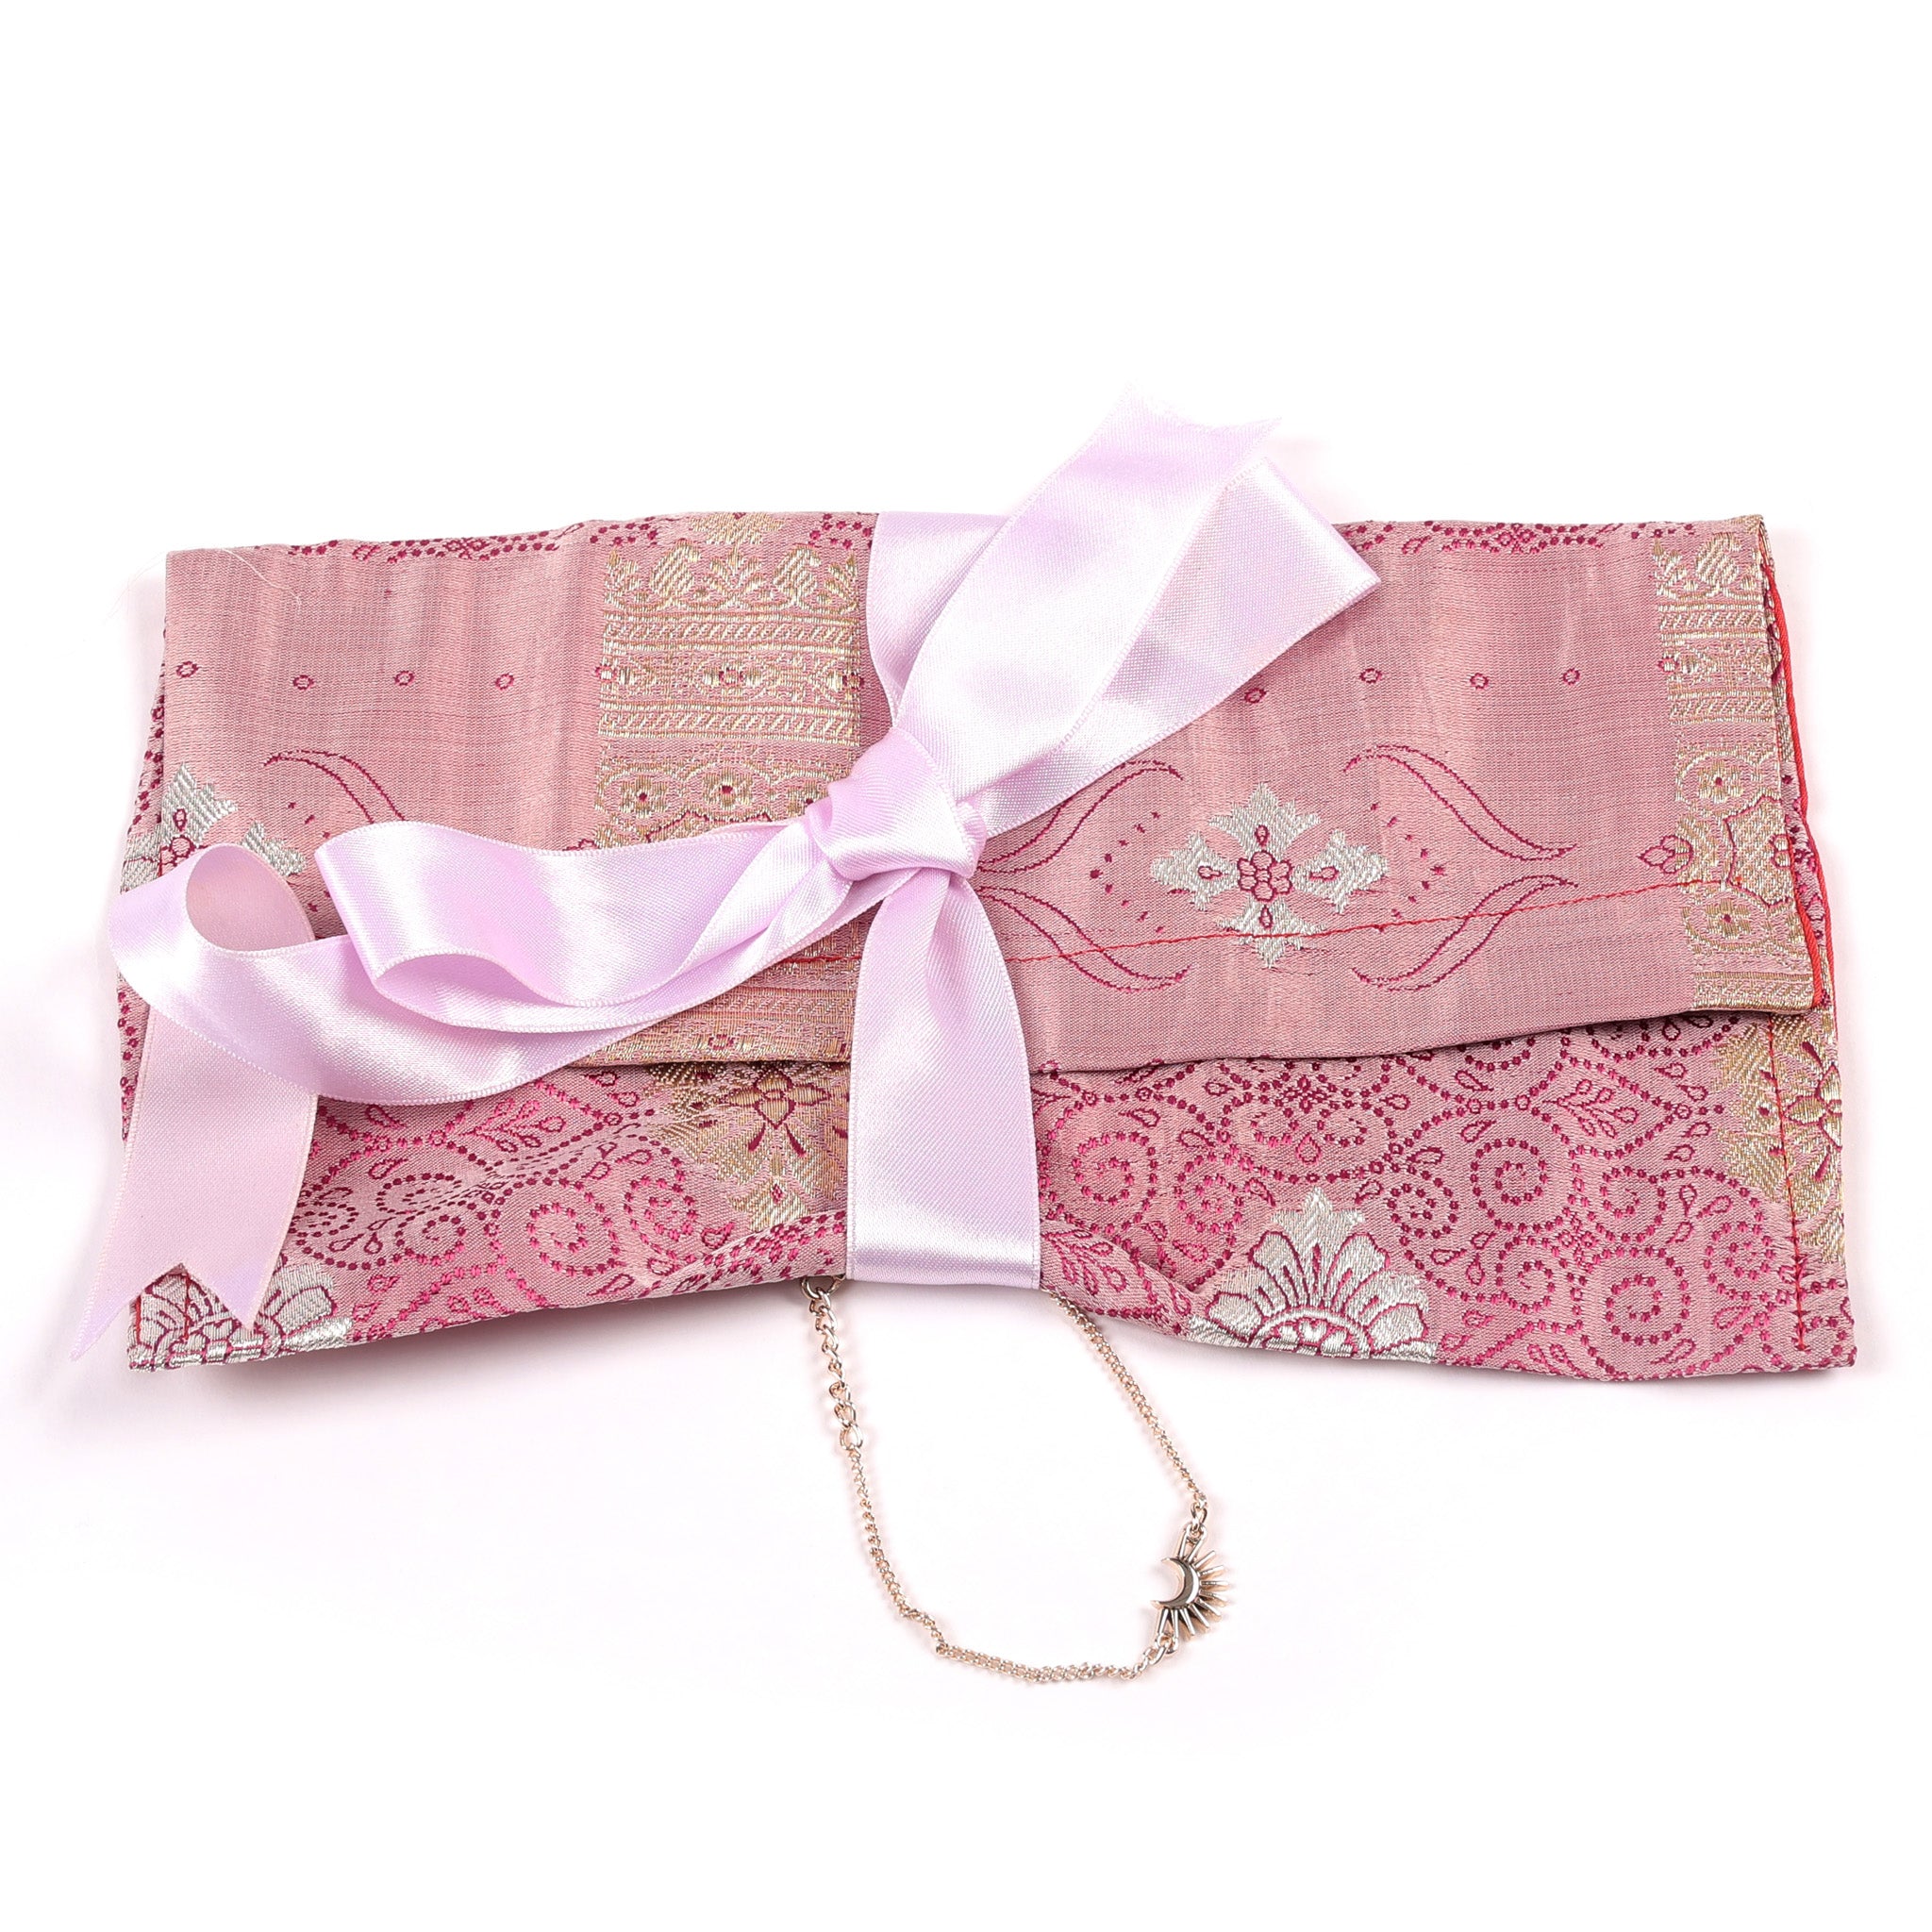 rose quartz purse made from vintage silk sari